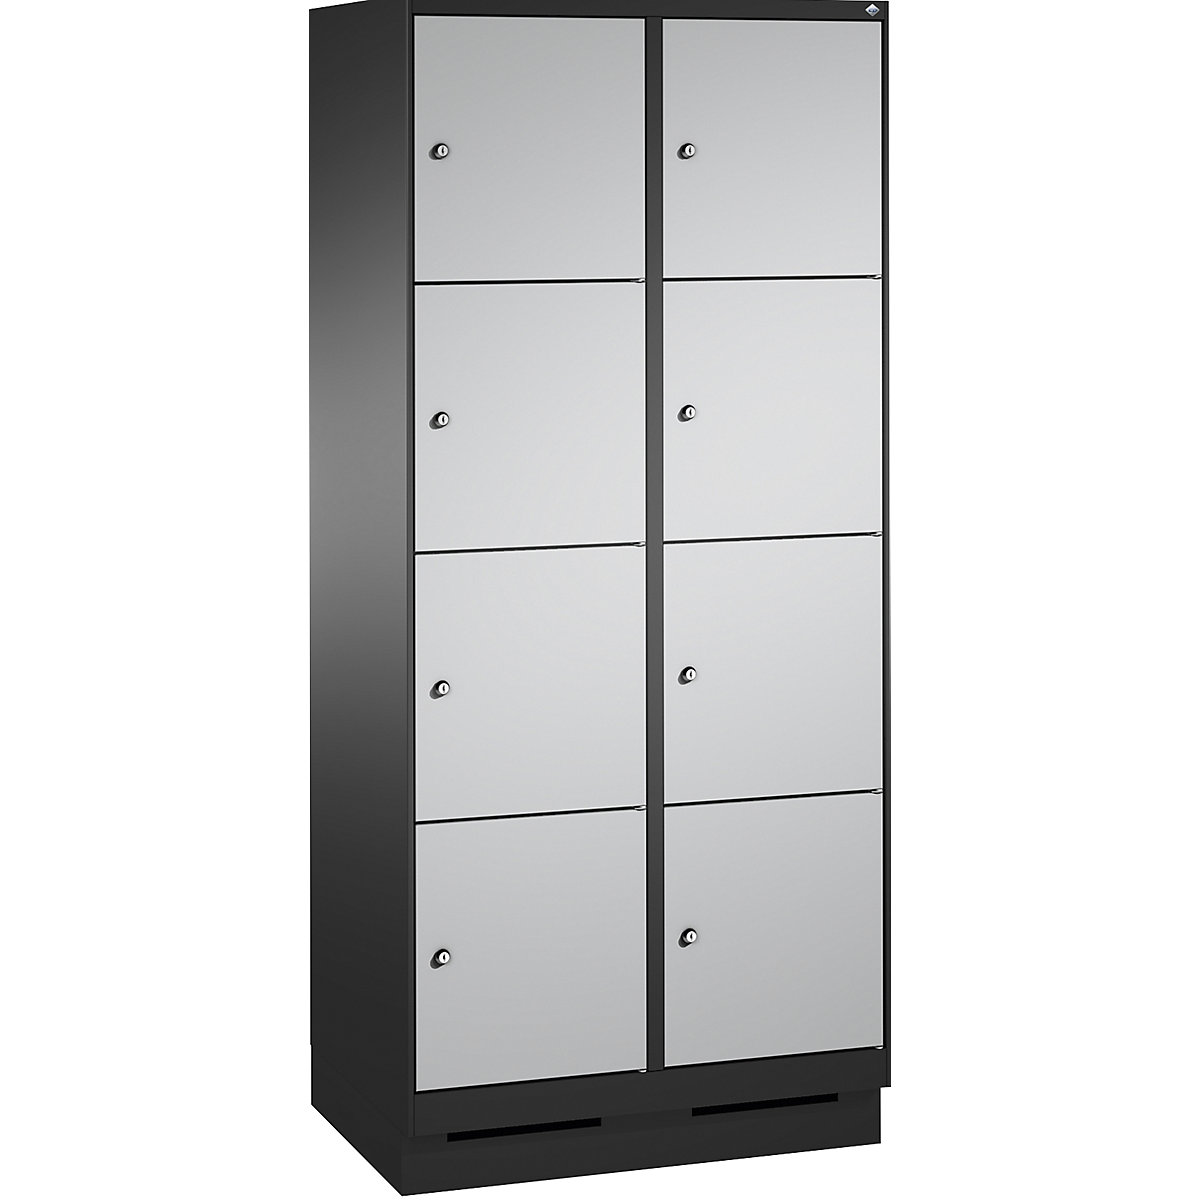 Armoire à casiers sur socle EVOLO – C+P, 2 compartiments, 4 casiers chacun, largeur compartiments 400 mm, gris noir / aluminium-6